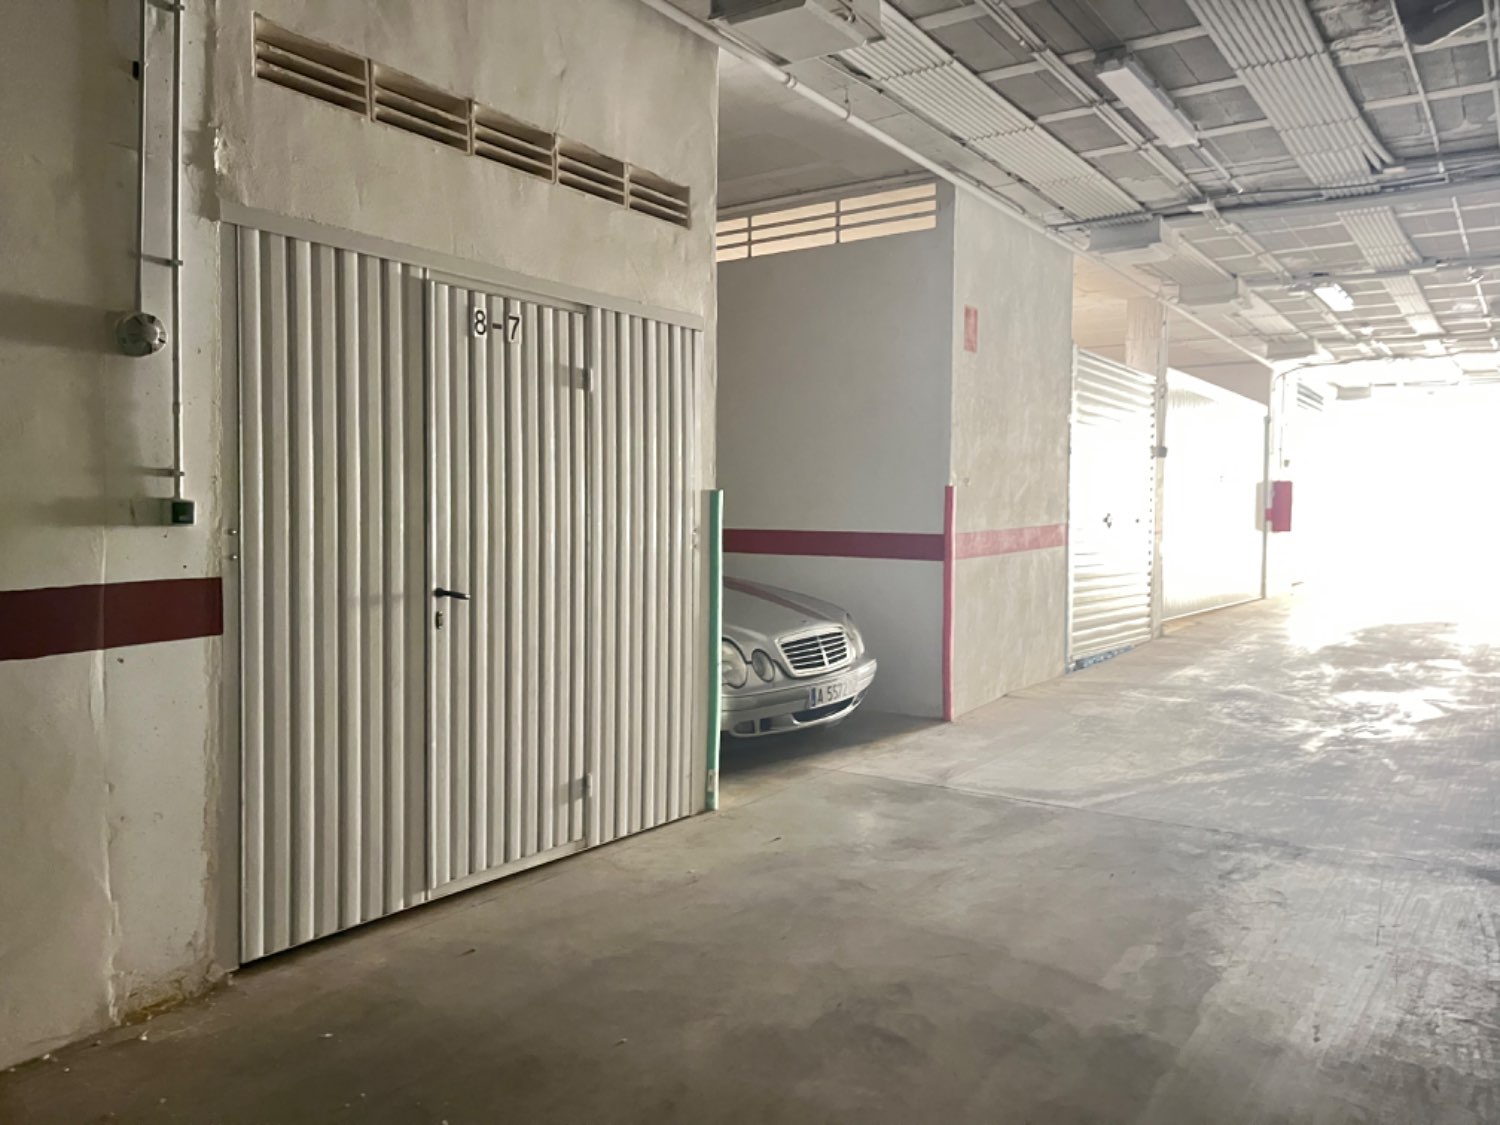 Afgesloten dubbele garage voor 2 auto's